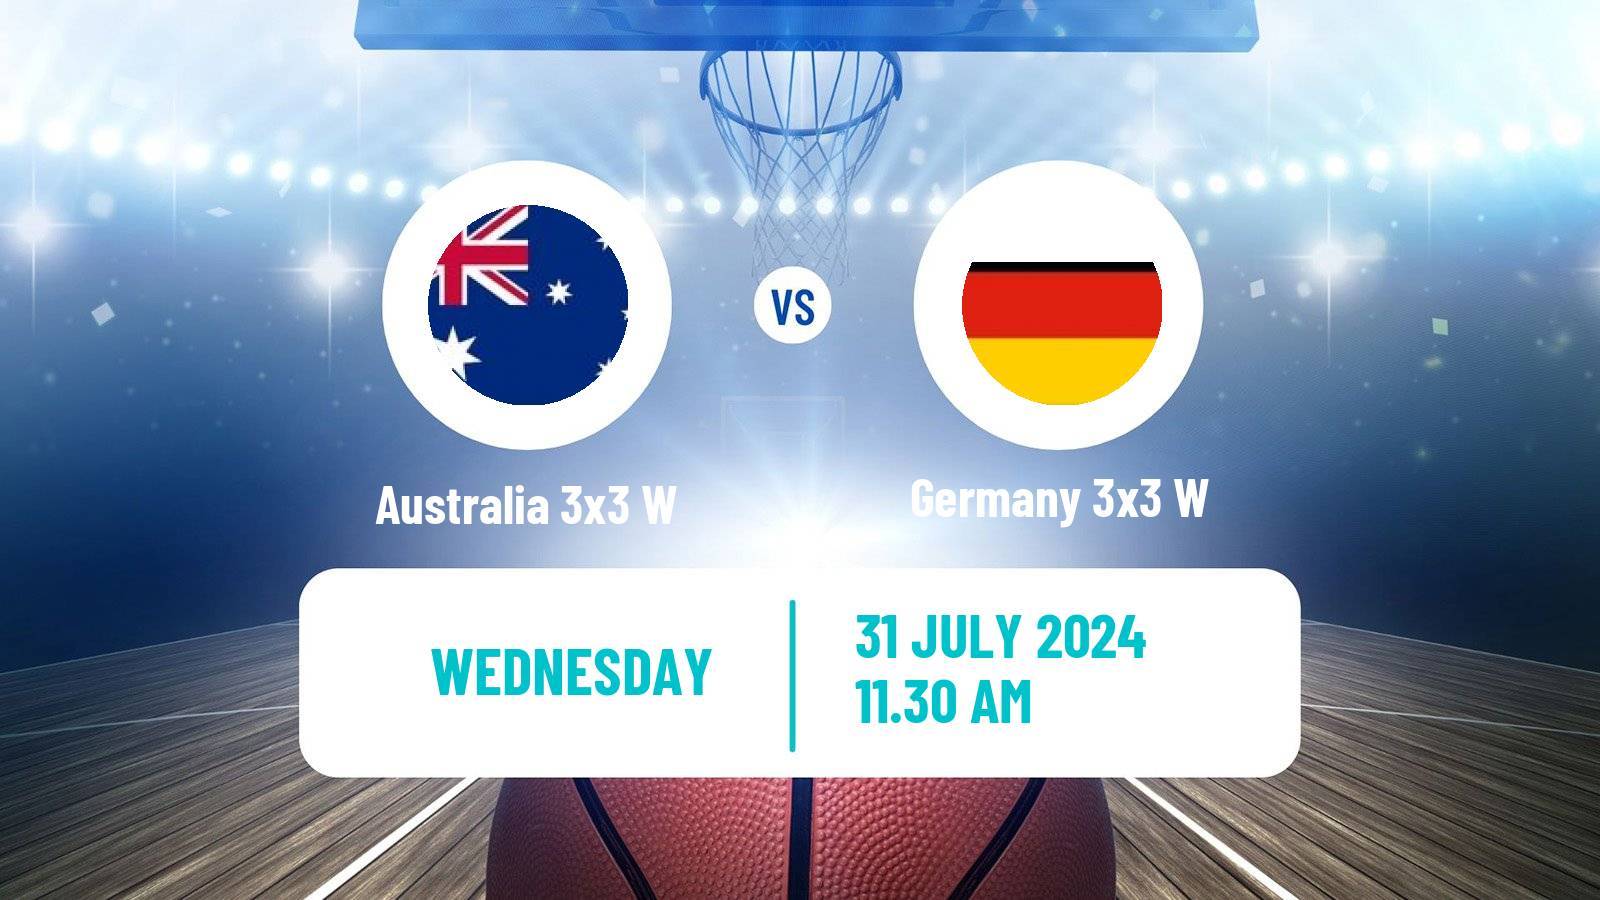 Basketball Olympic Games Basketball 3x3 Women Australia 3x3 W - Germany 3x3 W